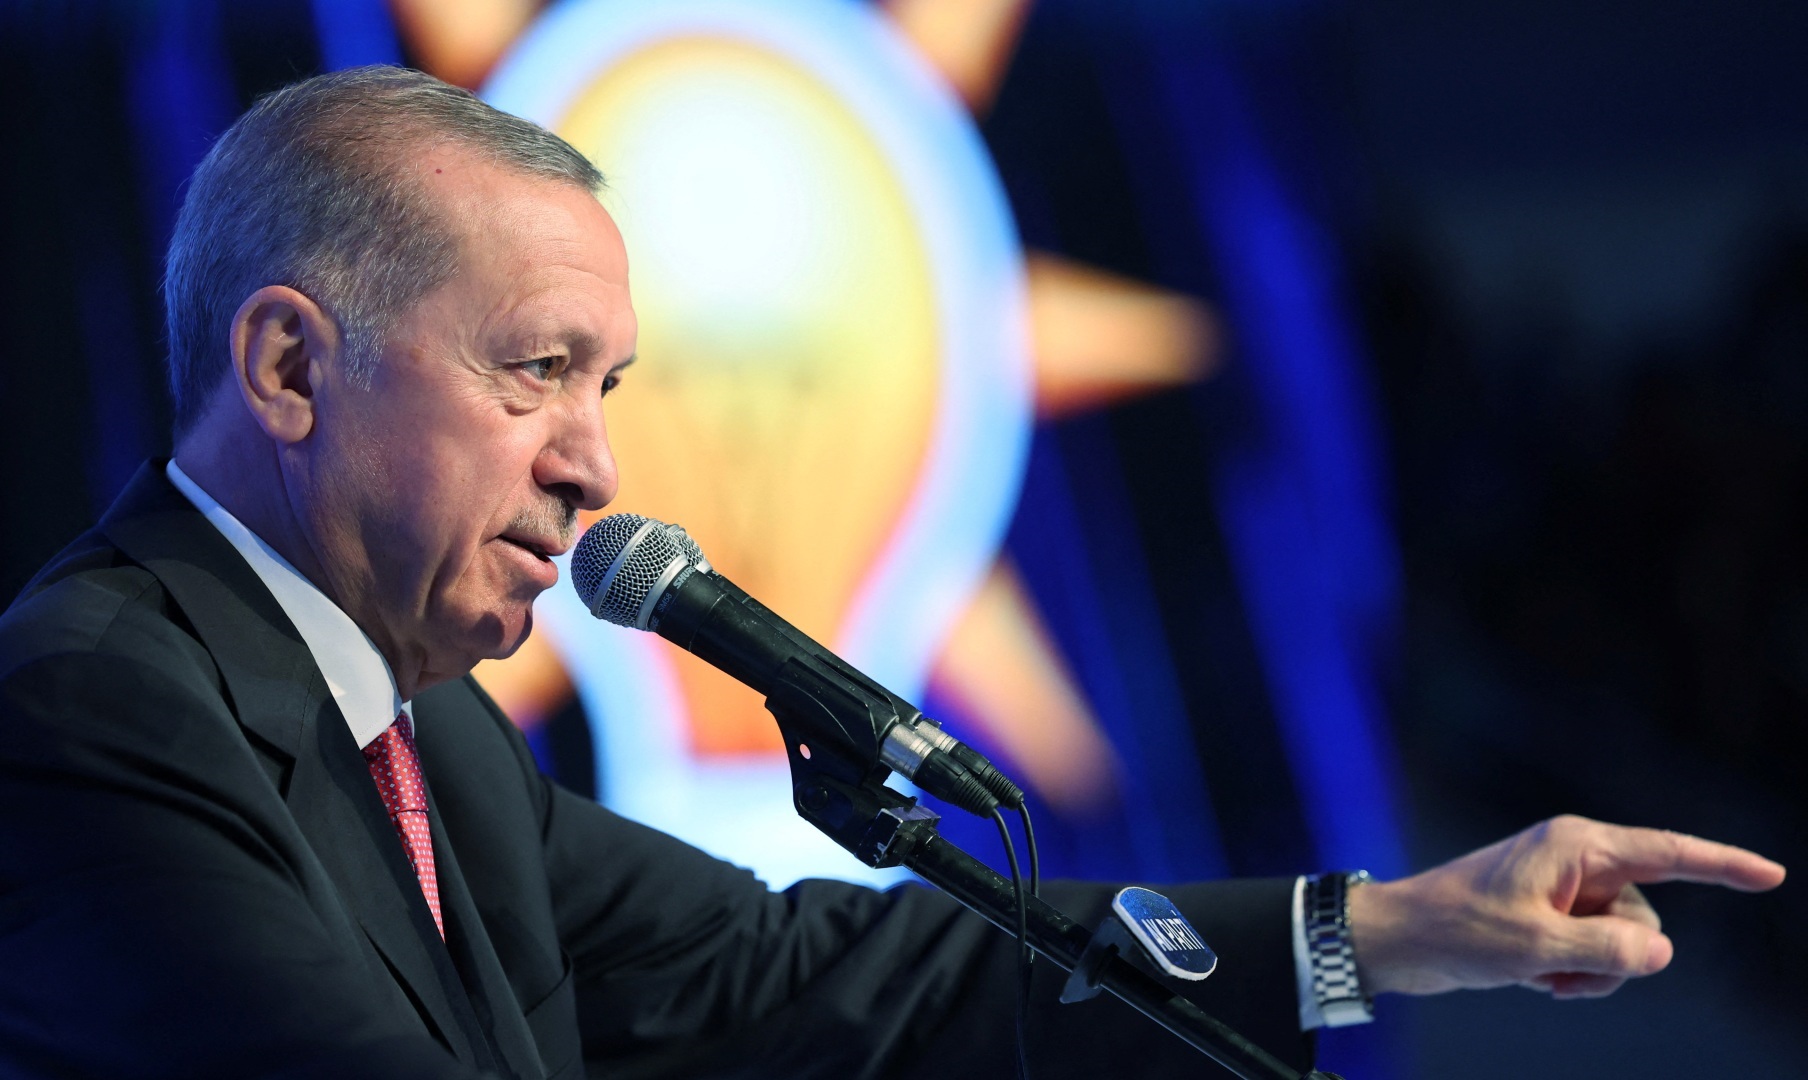 وعده های اقتصادی اردوغان برای فرار از شکست در انتخابات ترکیه